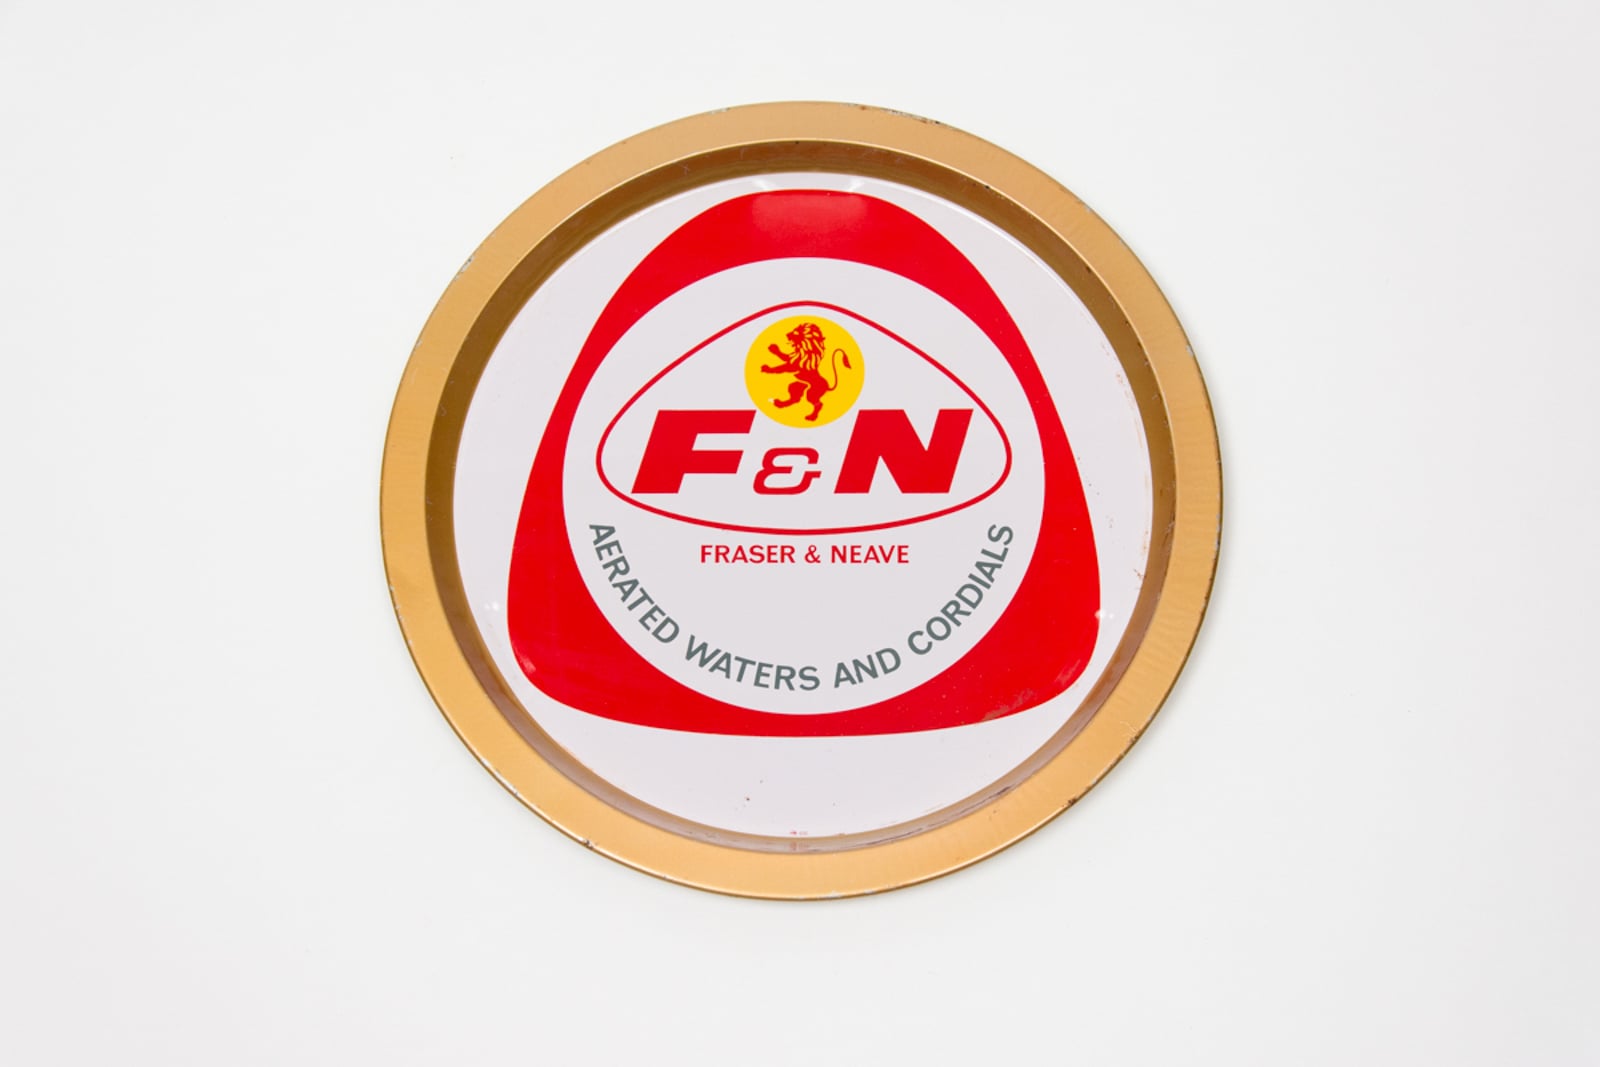 F&n logo